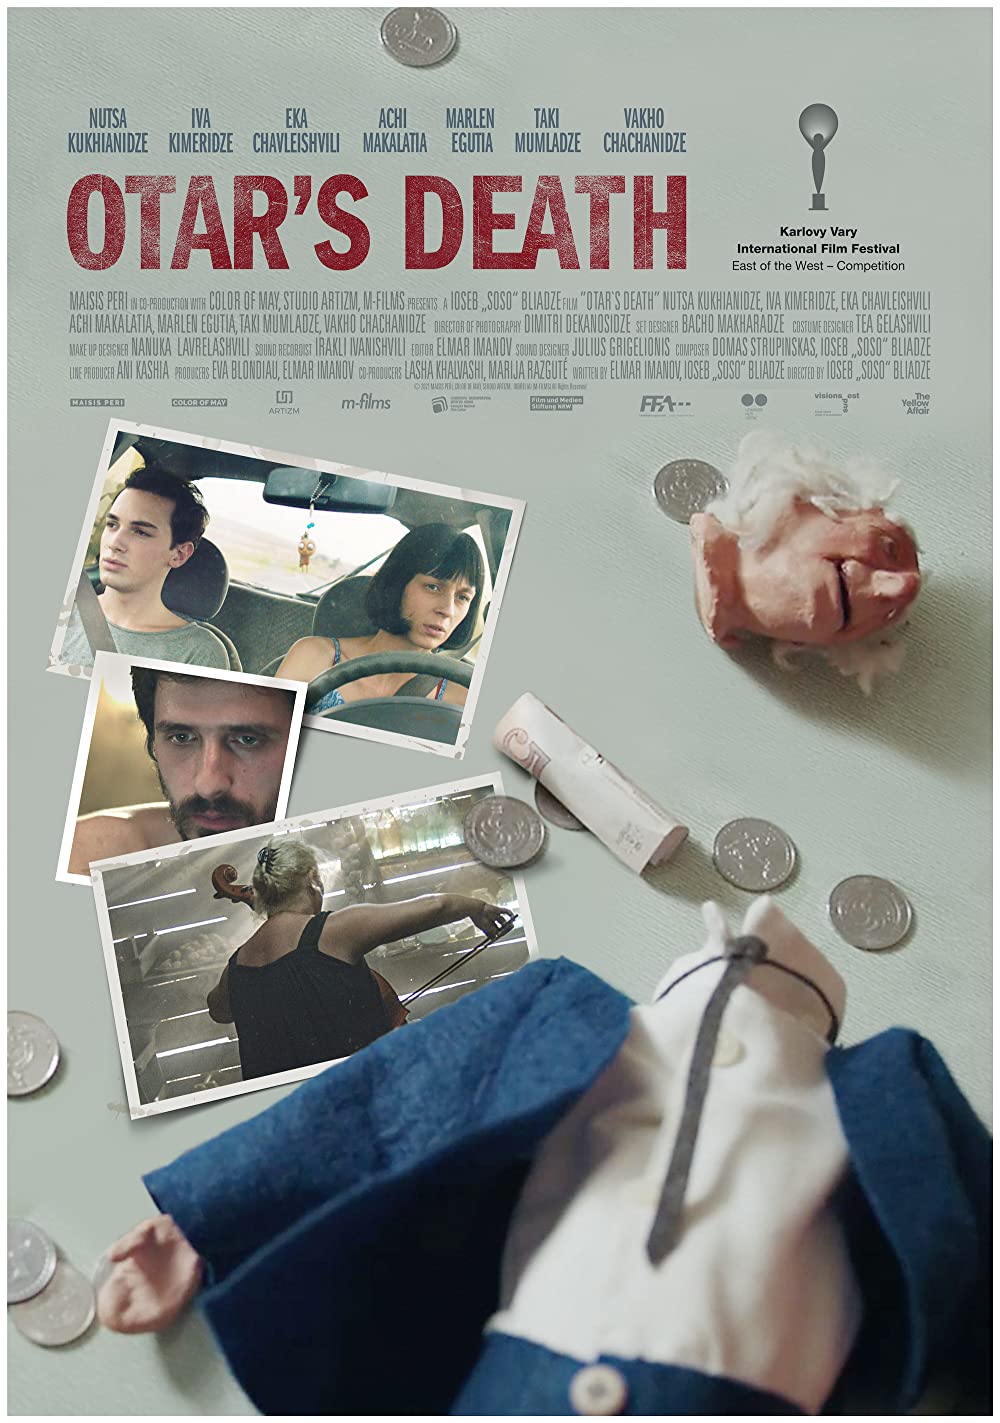 Filmbeschreibung zu Otar's Death (OV)